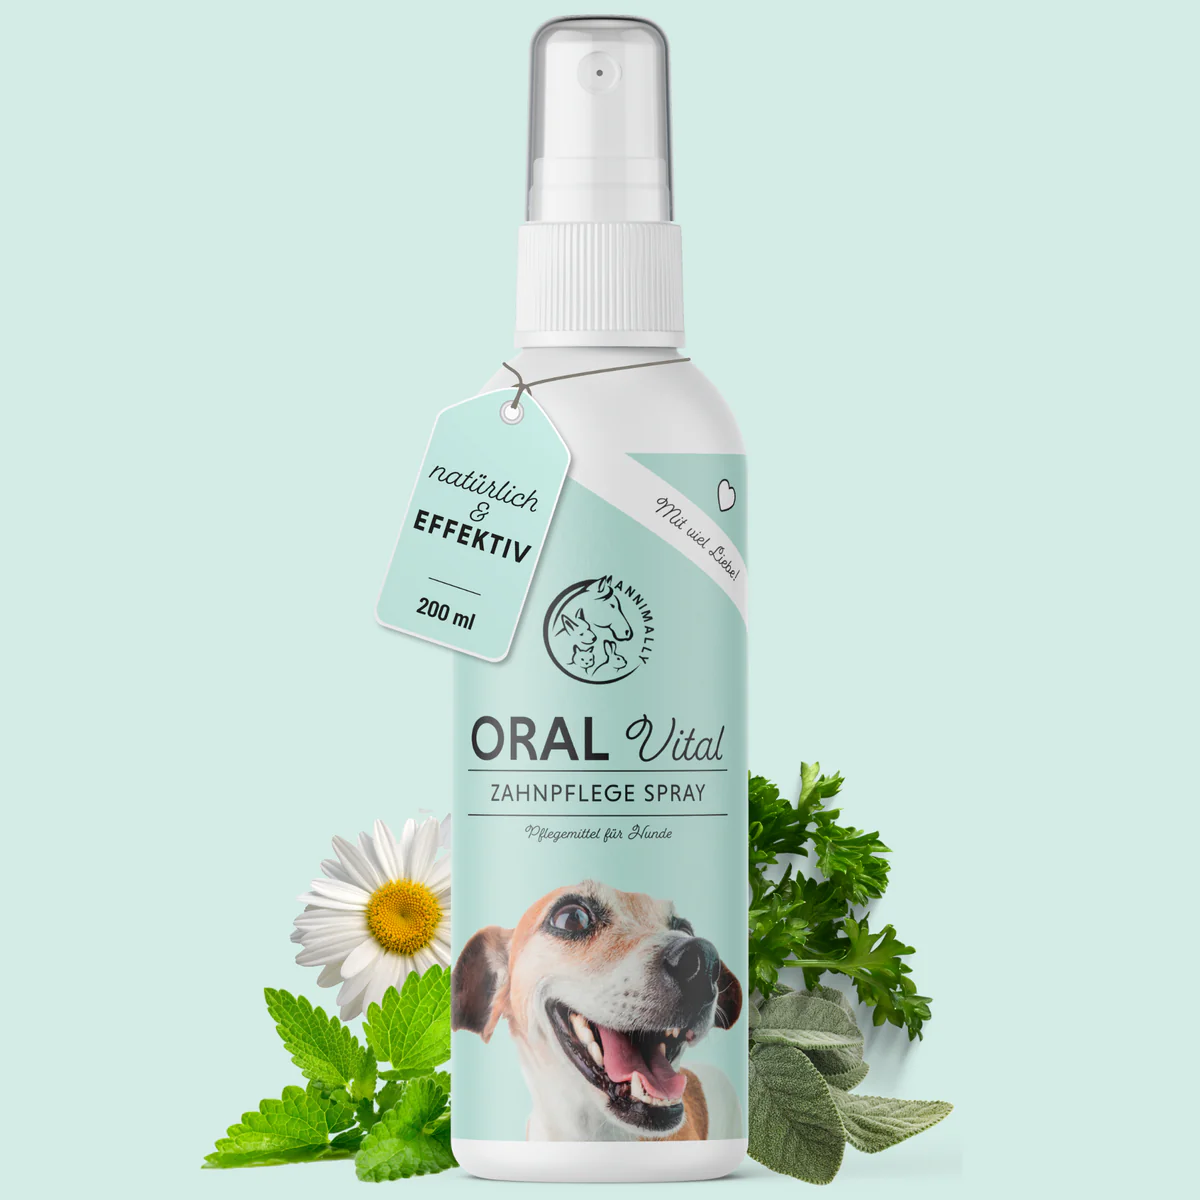 Spray dentale Oral Vital per cani di Annimally